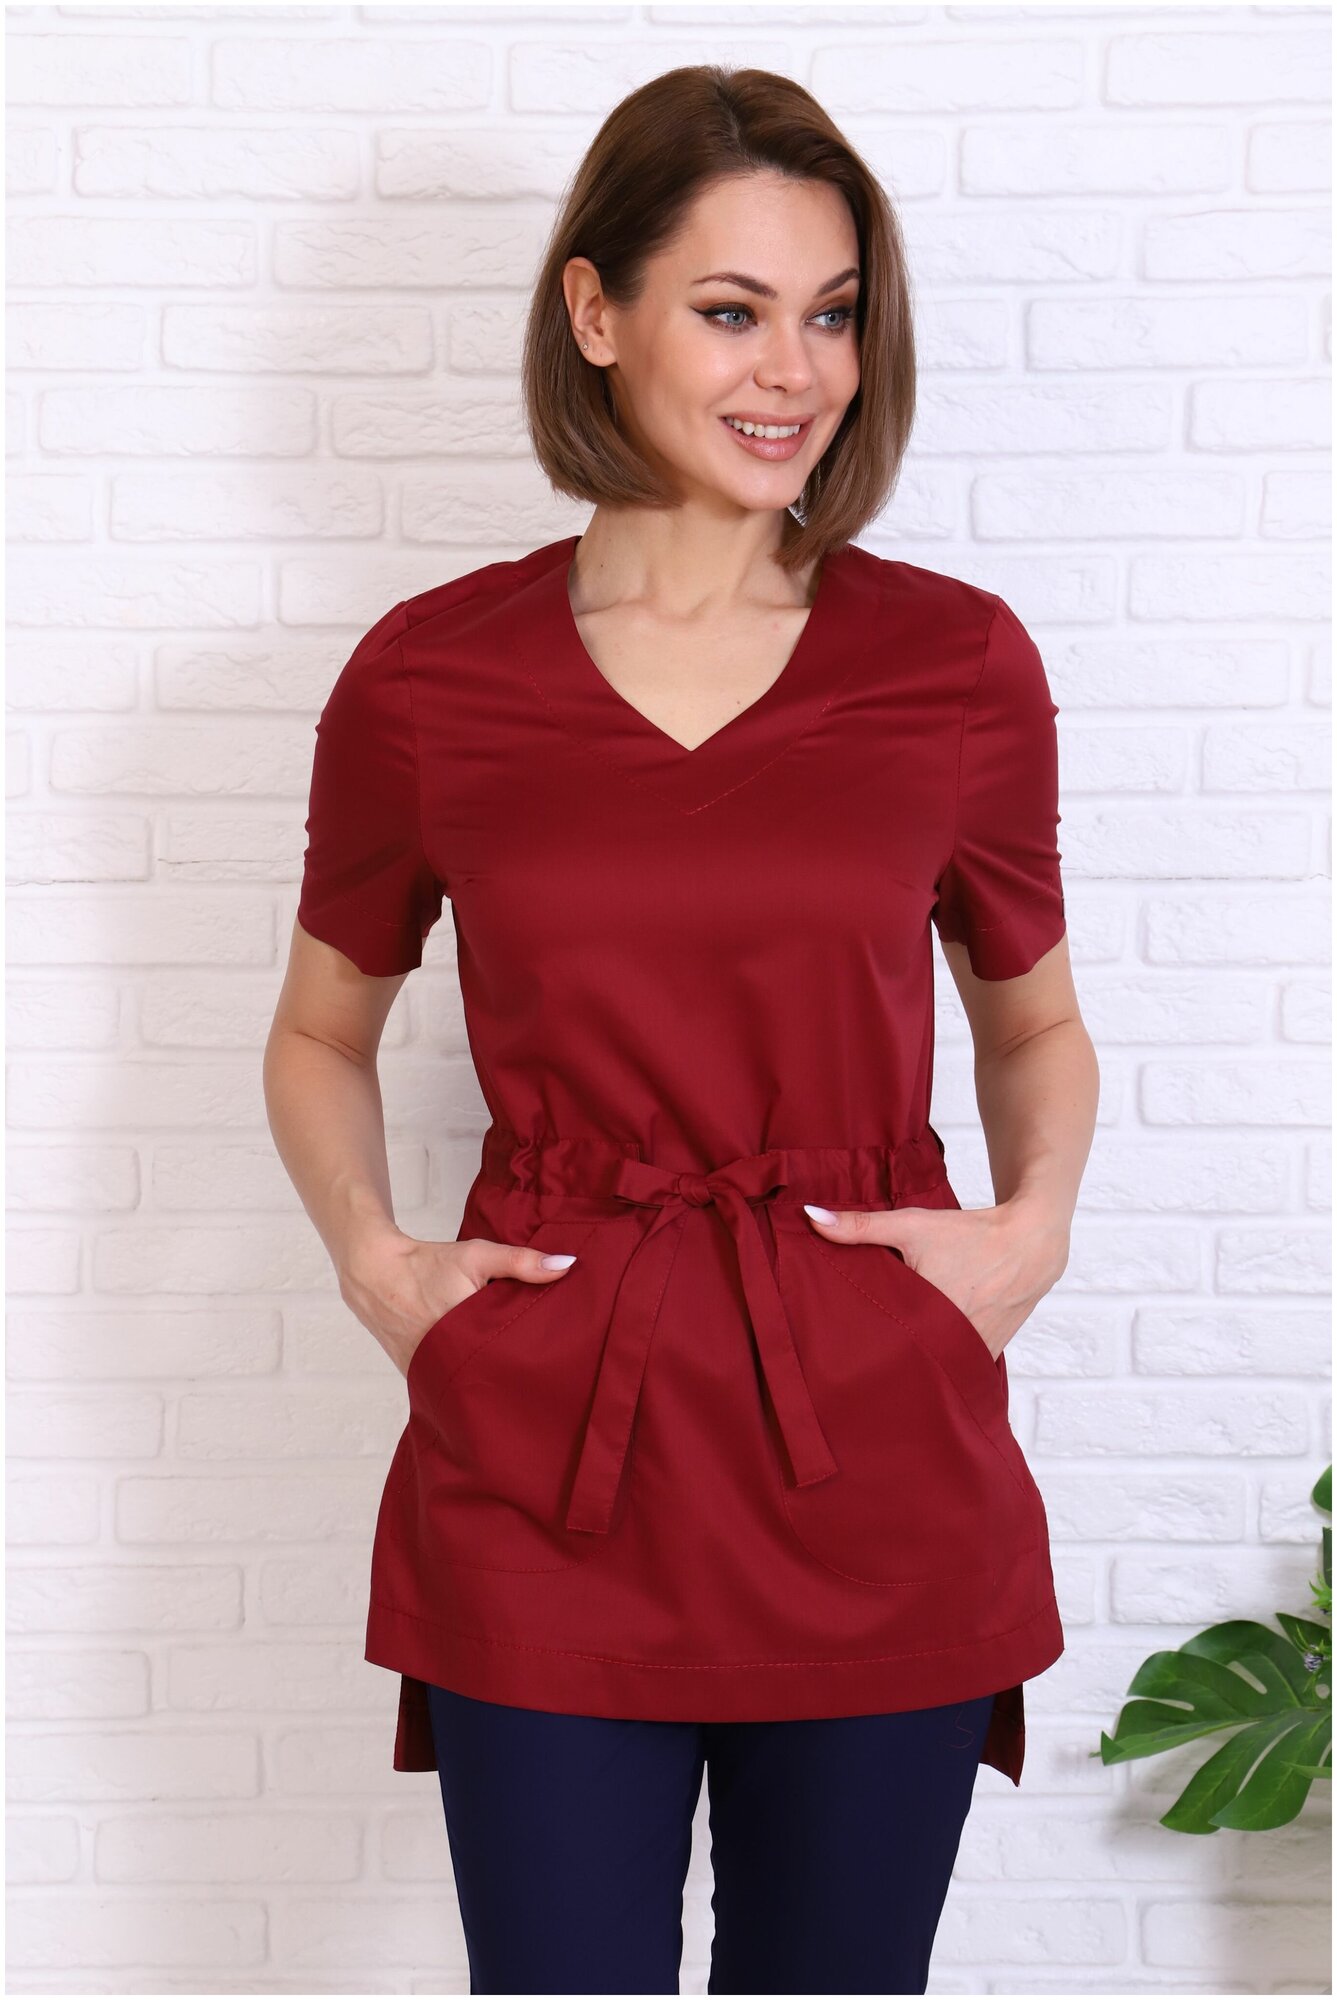 Туника/блузка медицинская женская Альба-С бордовая с поясом больших размеров. Куртка/рубашка рабочая удлиненная с разрезами стрейч. Спецодежда для женщин. Размер 50